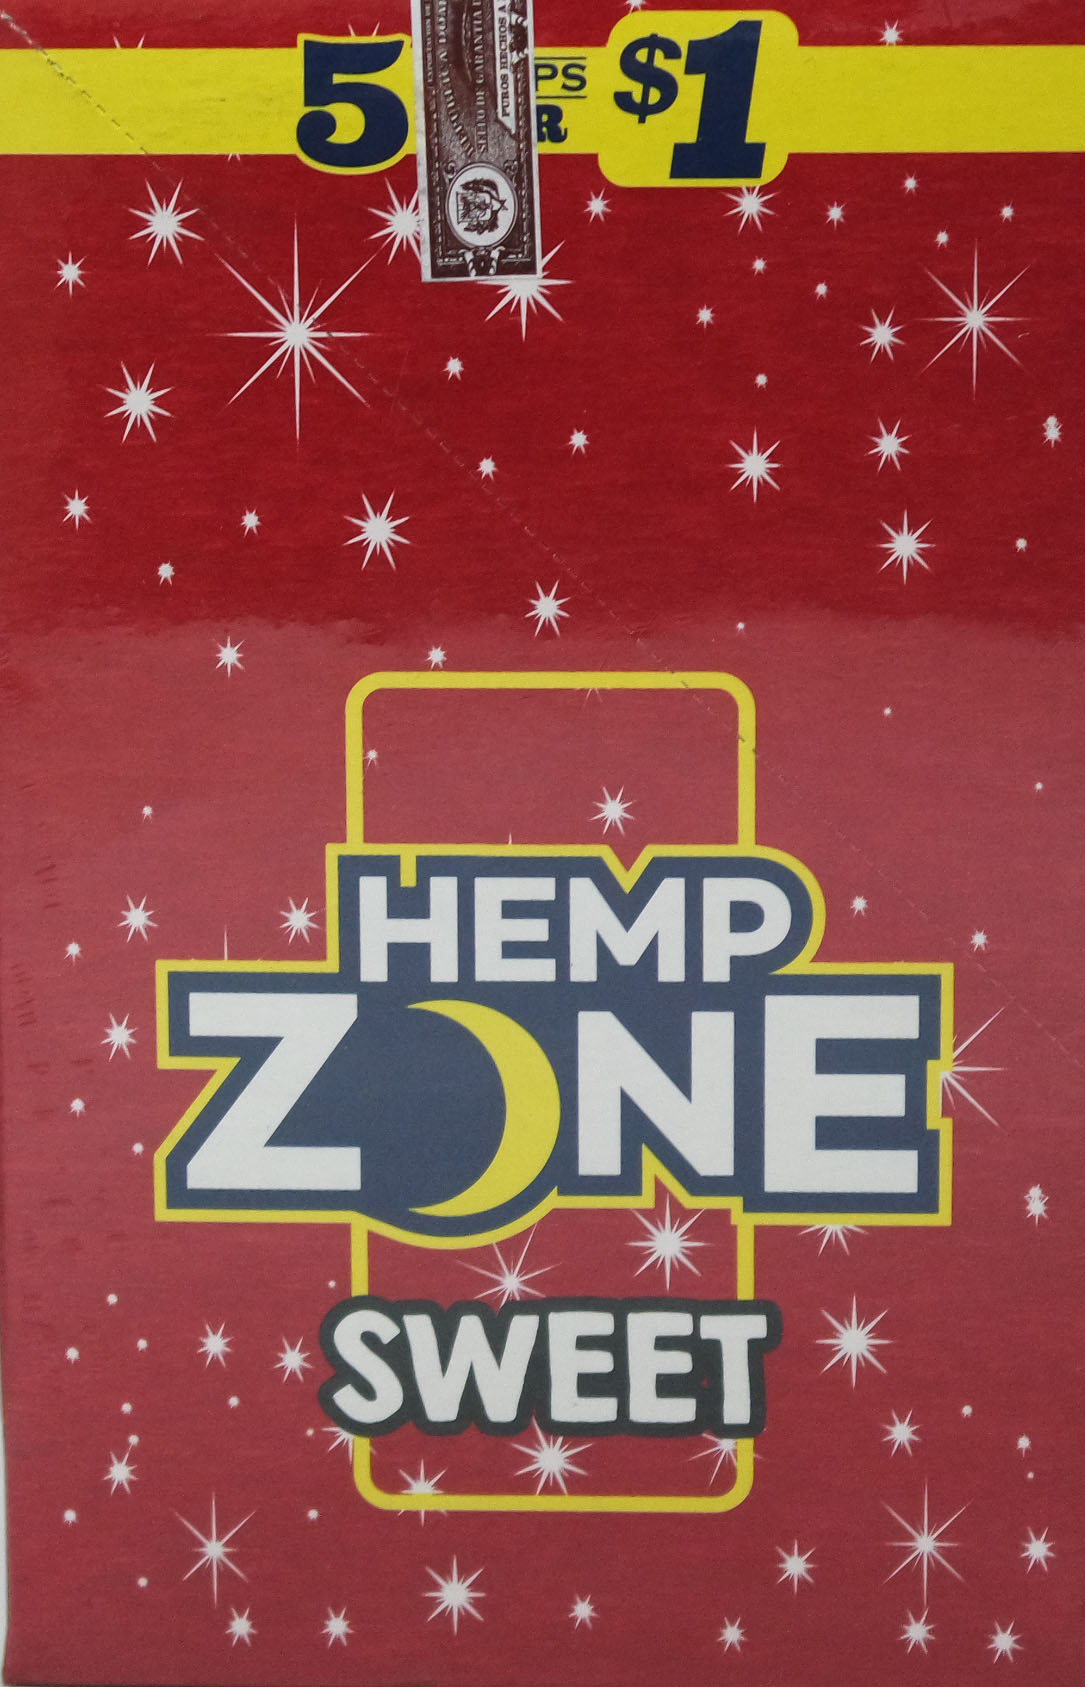 Hemp zone sweet wraps 5/$1 15/5pk